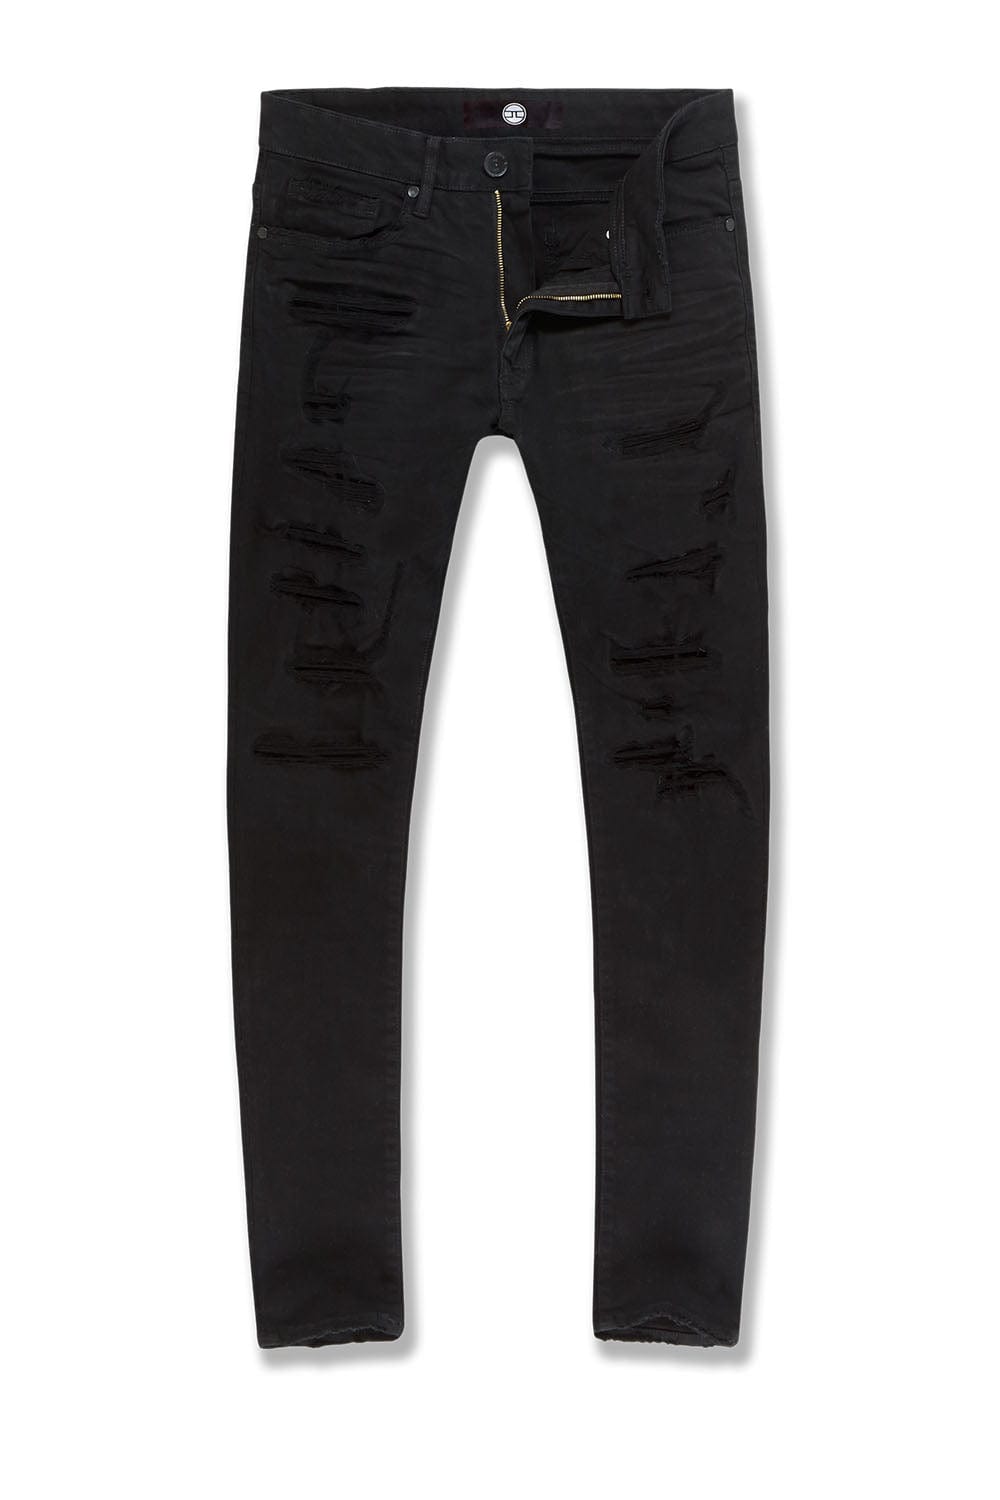 Jordan Craig Sean - Tribeca Twill Pants (Core Colors) Black / 30/32